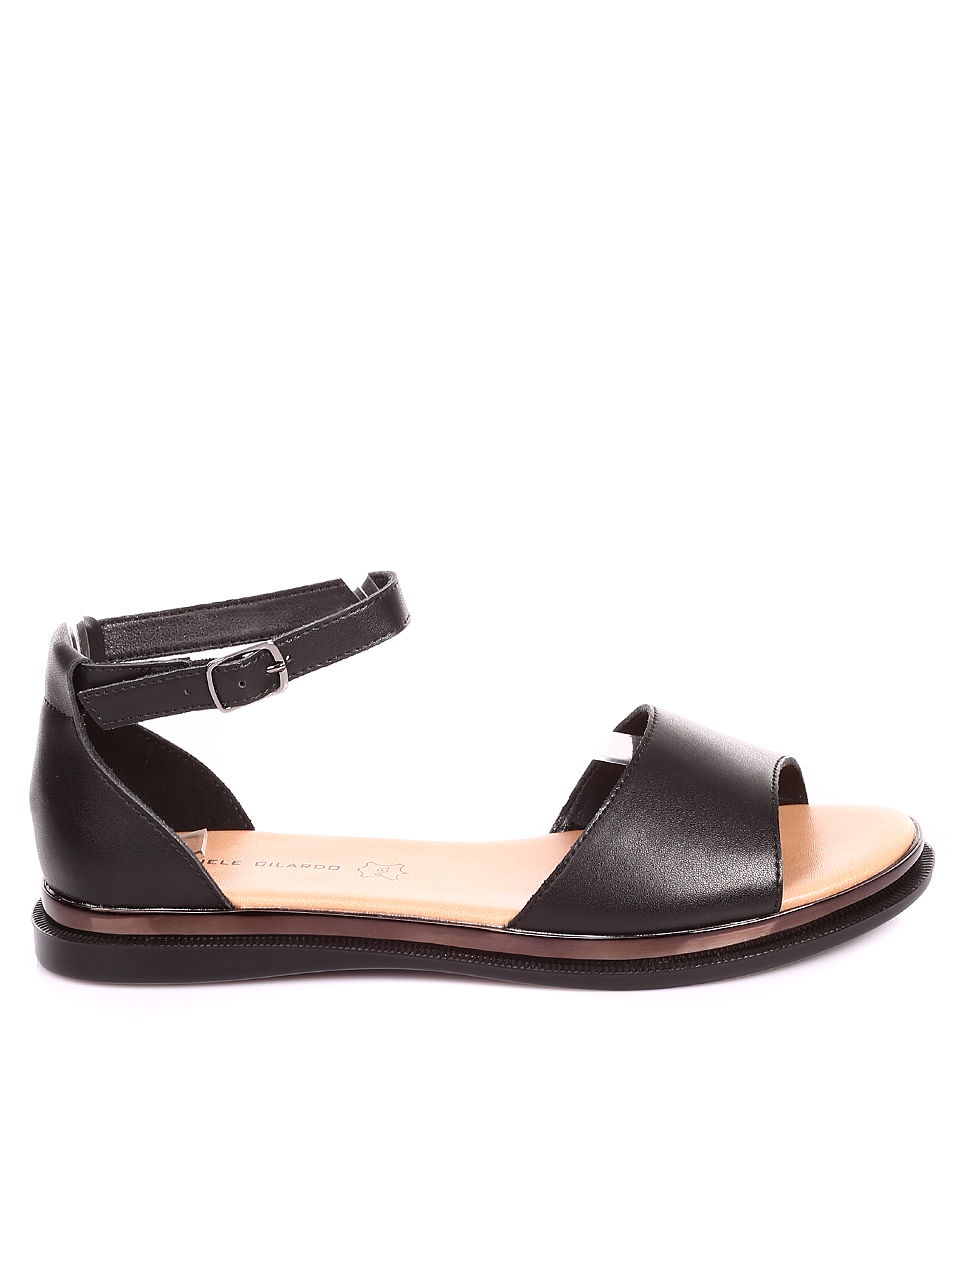 Ежедневни дамски равни сандали от естествена кожа в черно 4AF-22191 black